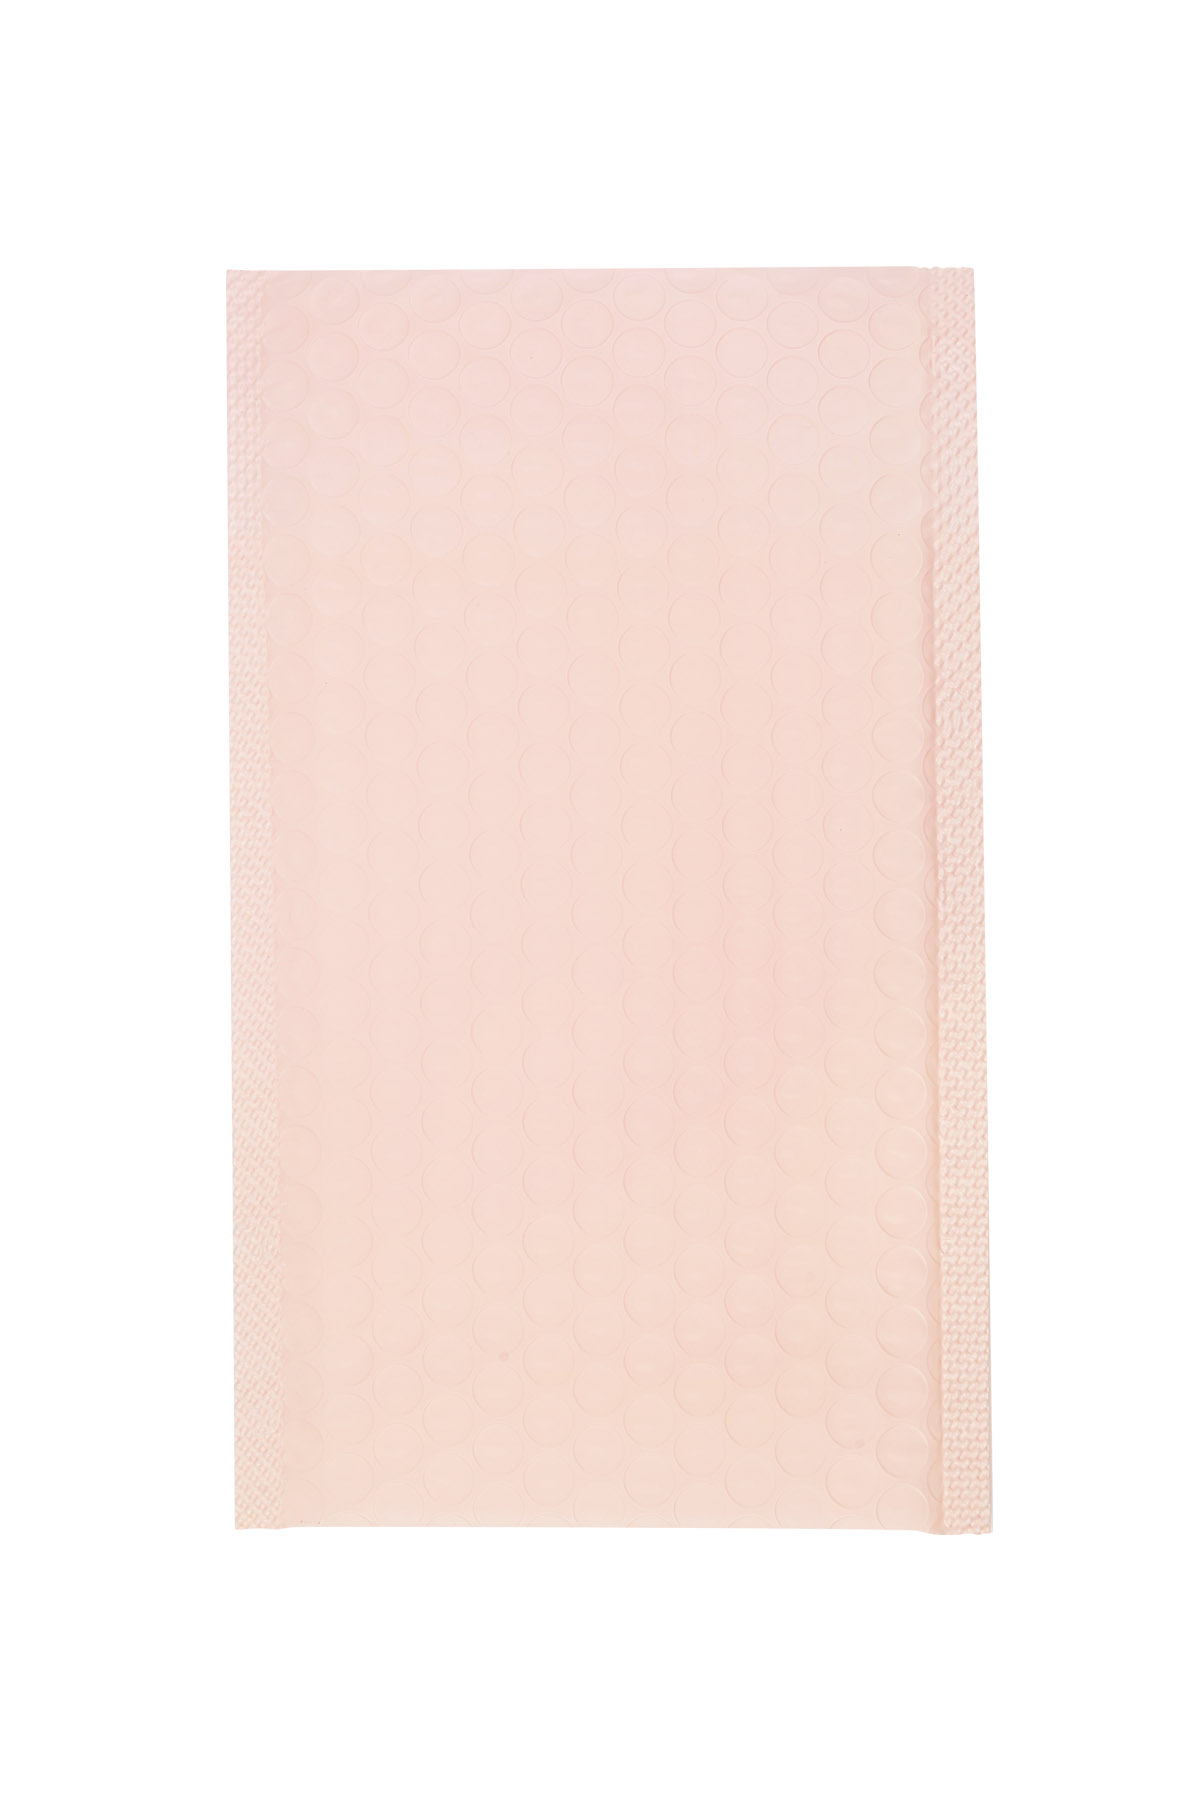 Luftpolstertasche für Versandtaschen – pastellrosa Kunststoff